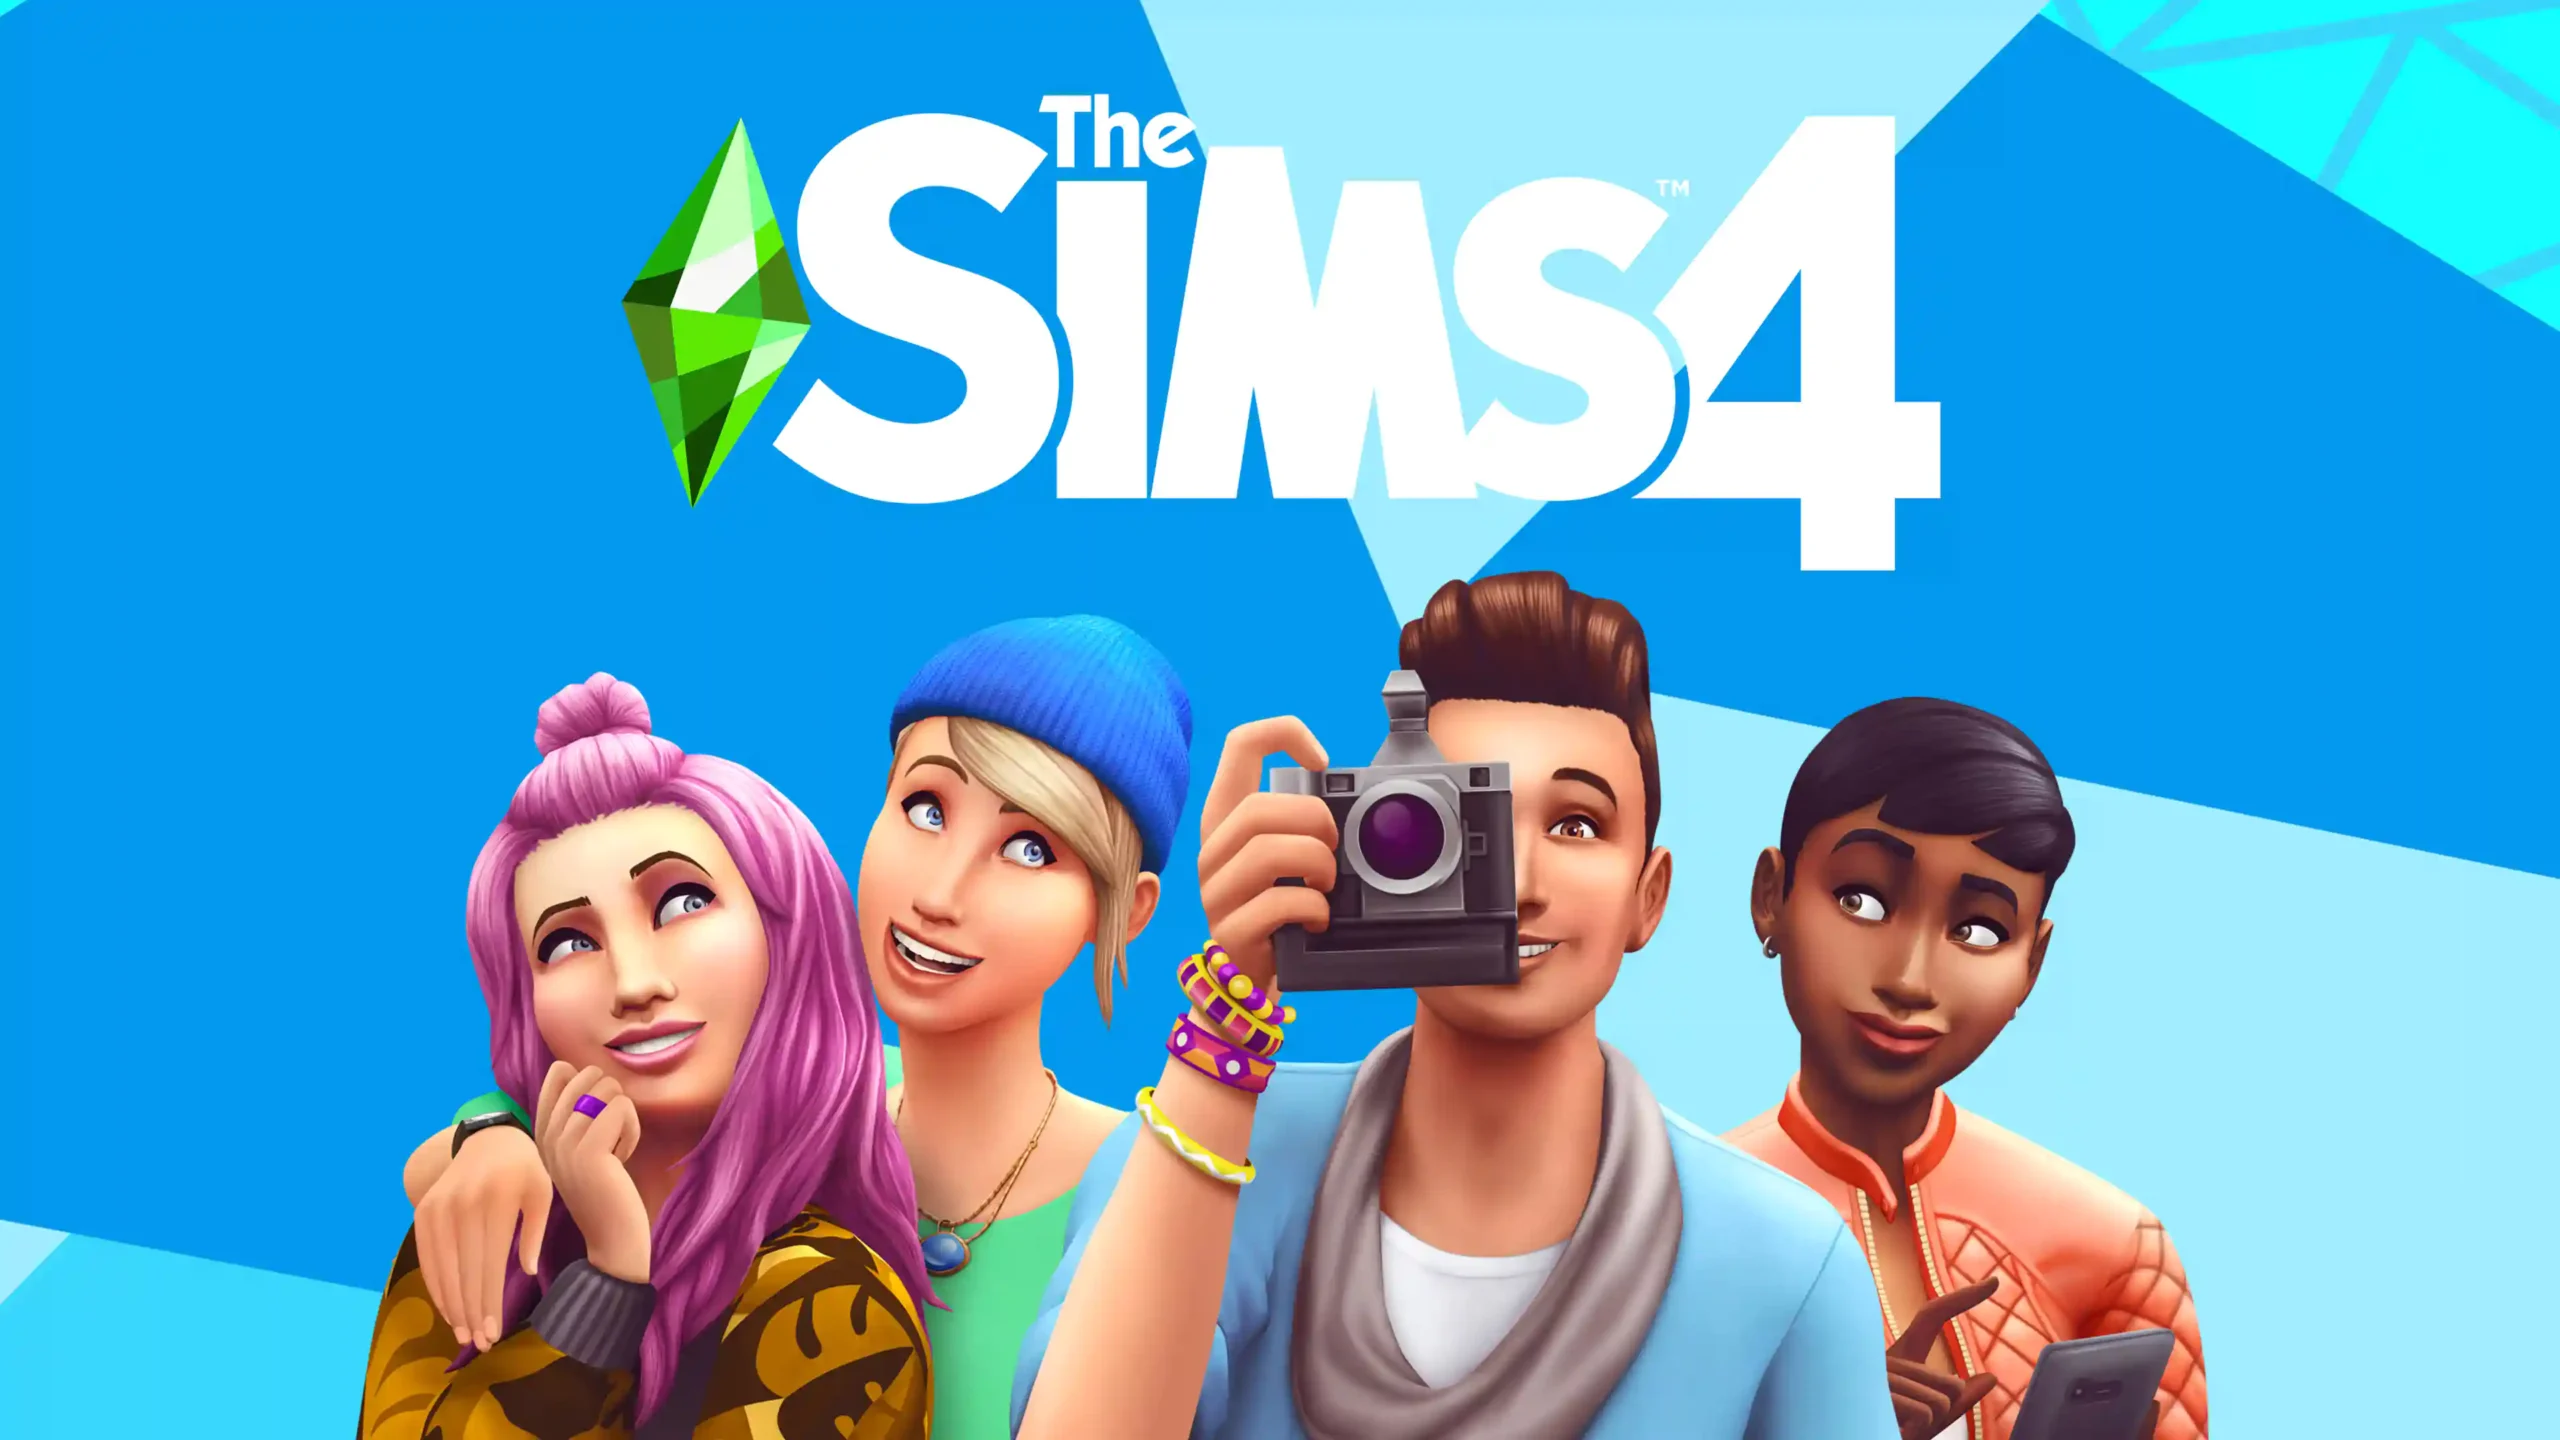 بازی The Sims 4 به بیش از ۷۰ میلیون بازیکن رسیده است